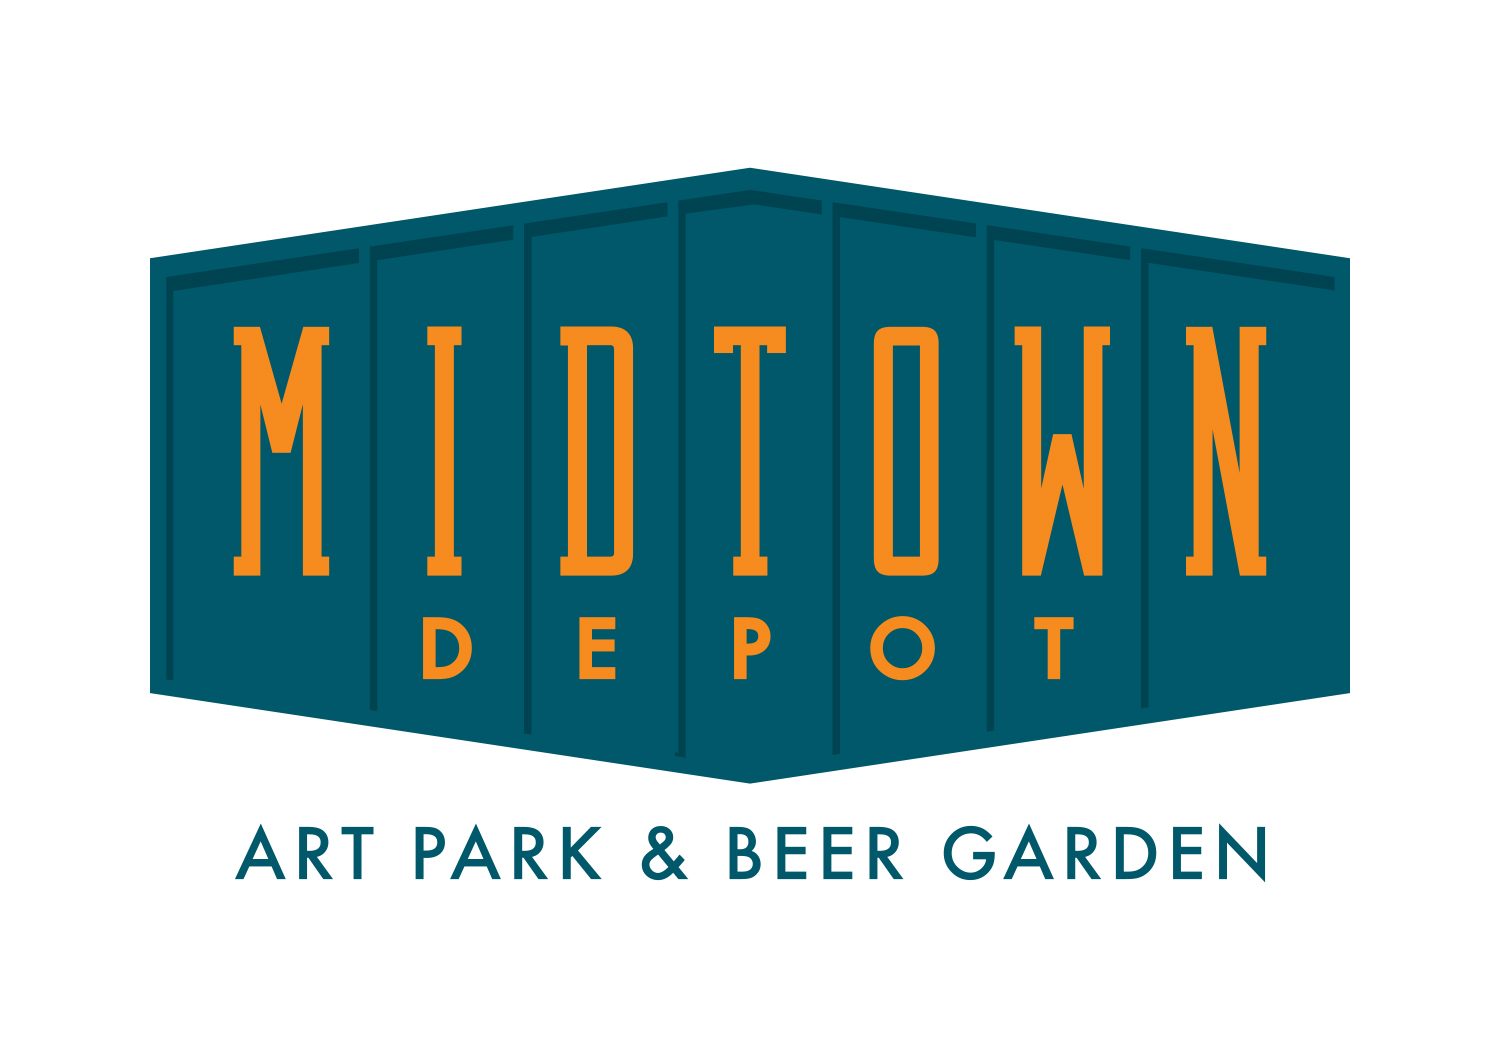 Midtown Depot